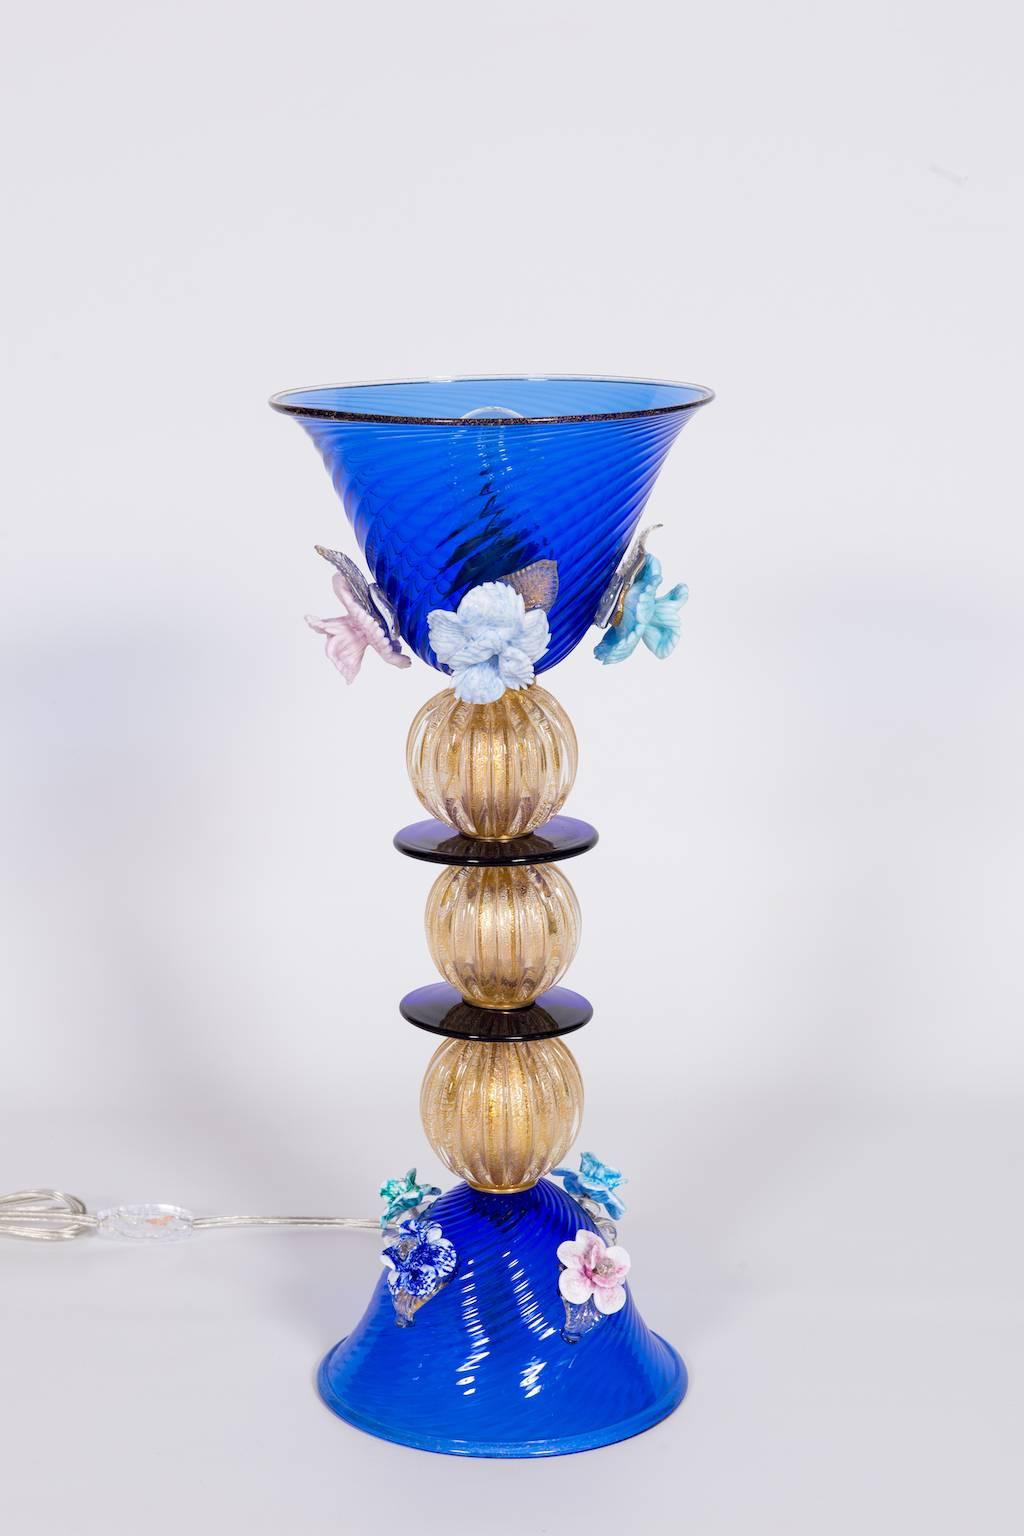 Italienische Tischlampe aus blauem und 24-karätigem Gold und mehrfarbigem Muranoglas, bestehend aus einem blauen Sockel mit vier Blumen, darüber drei Kugeln aus 24-karätigem Gold, die durch kreisförmige blaue Scheiben geteilt sind, darüber ein